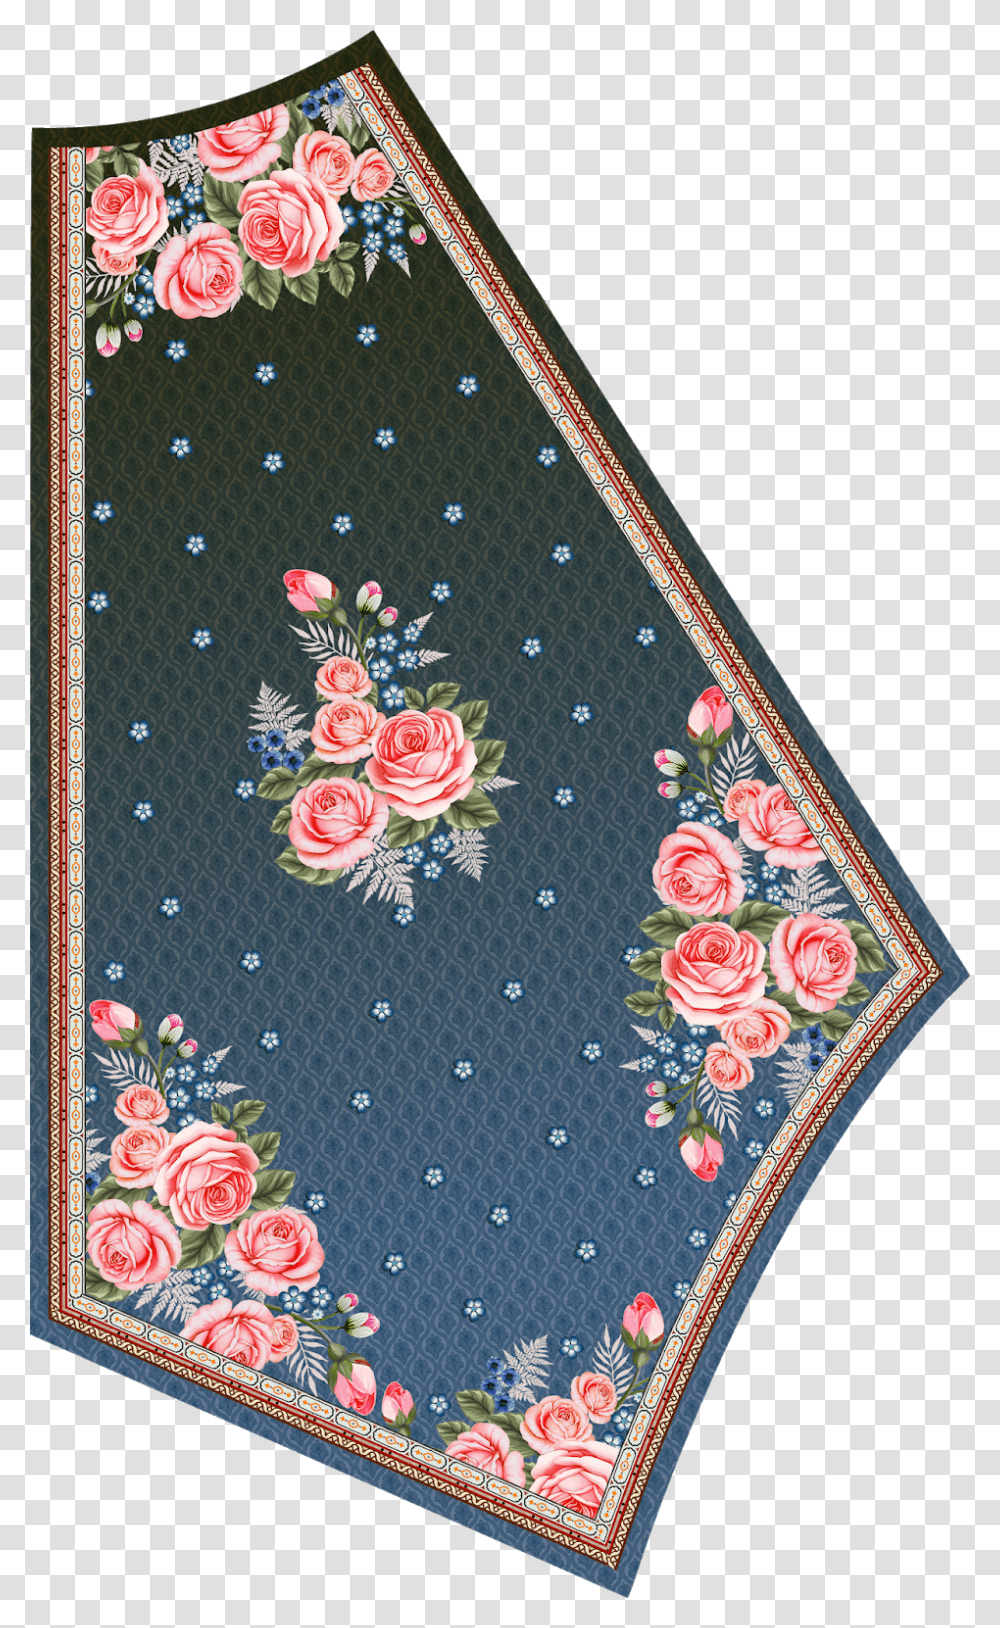 Rose, Rug, Pattern, Embroidery, Floral Design Transparent Png